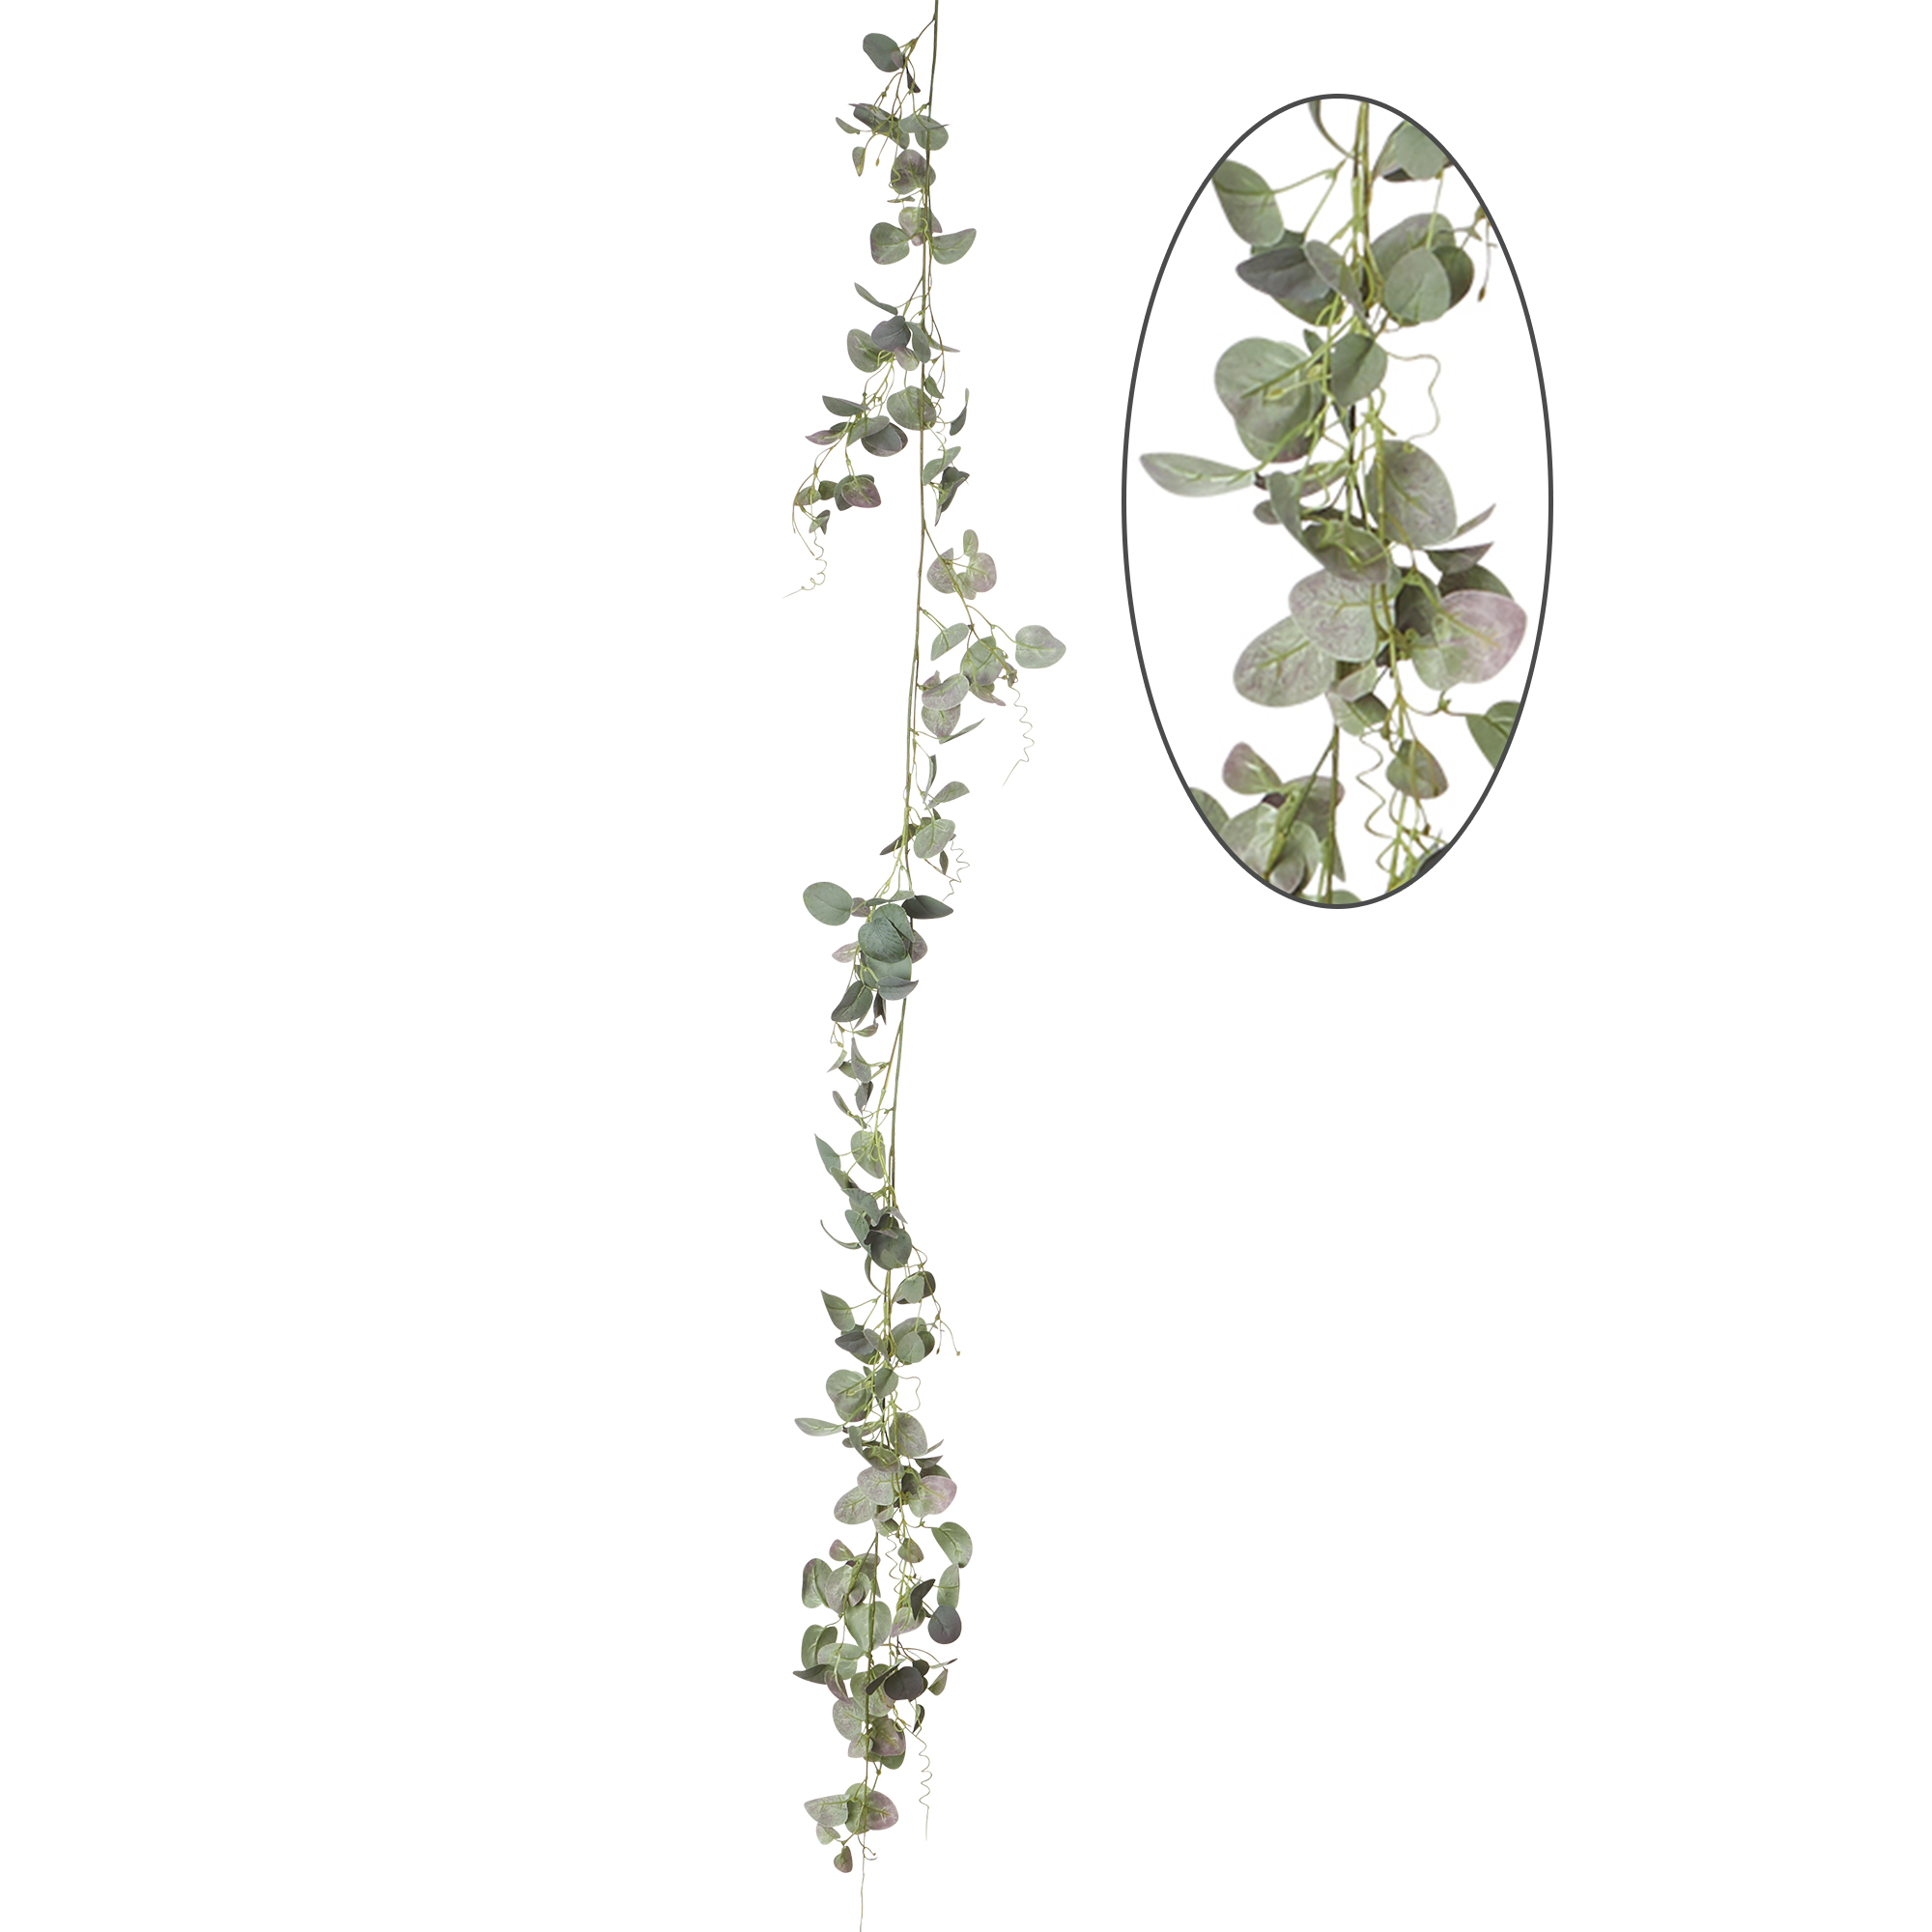 Artificial Silver Dollar Eucalyptus Garland 72" - Green